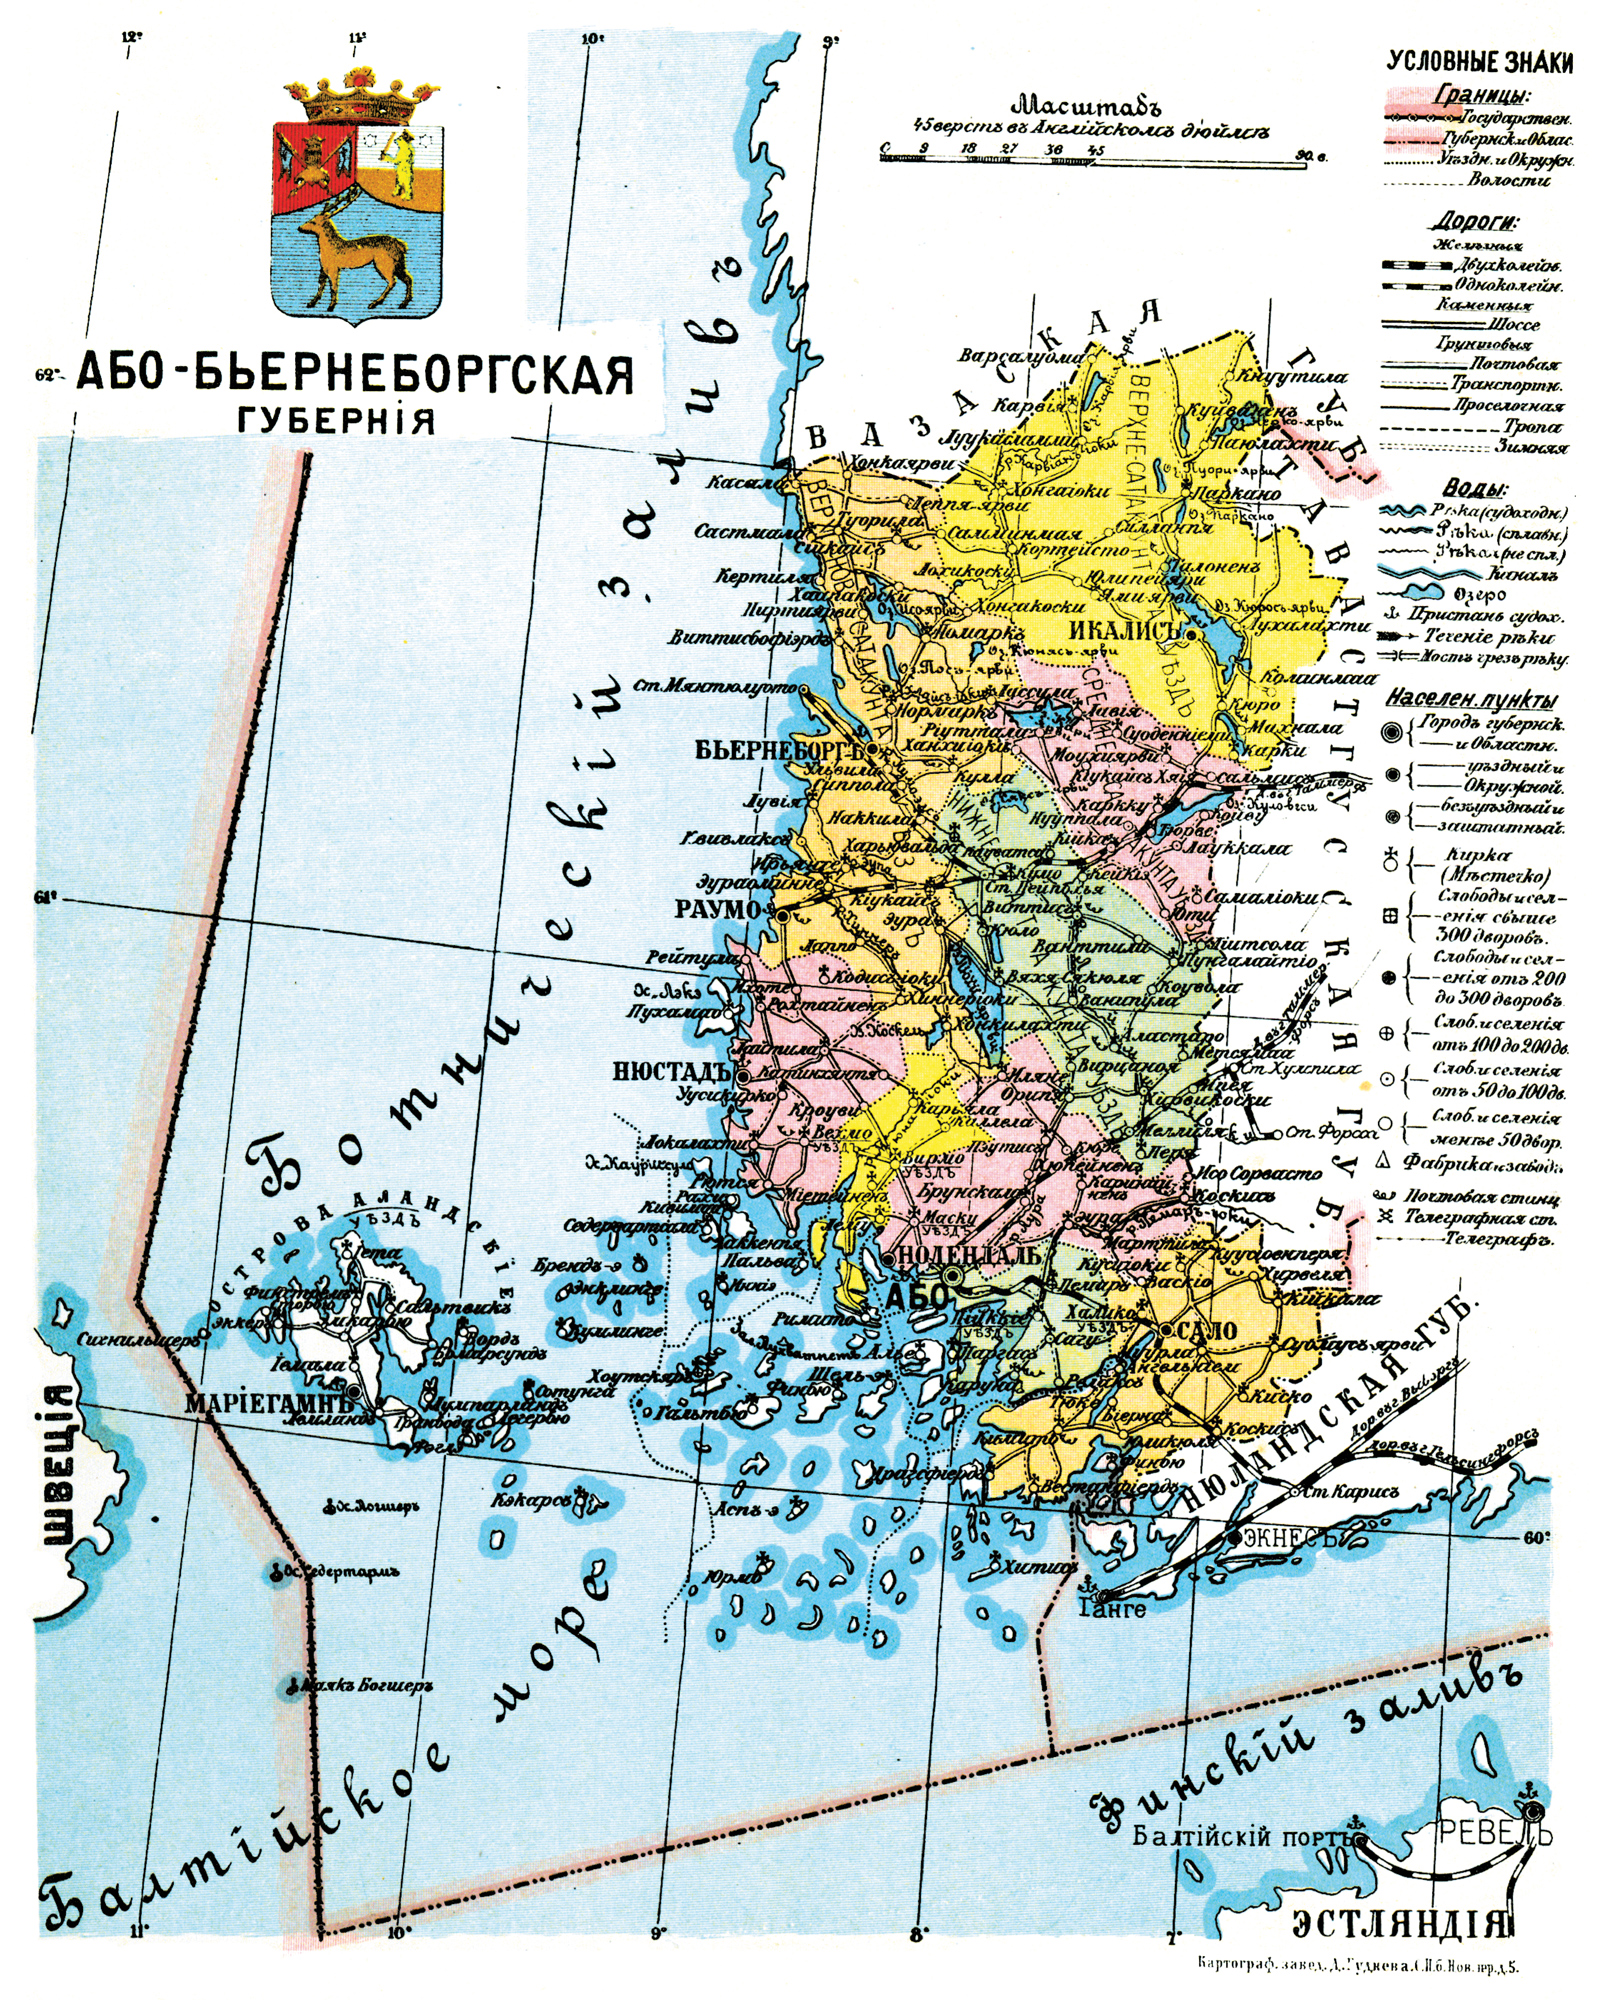 1913. Åbo and Björneborg Governorate